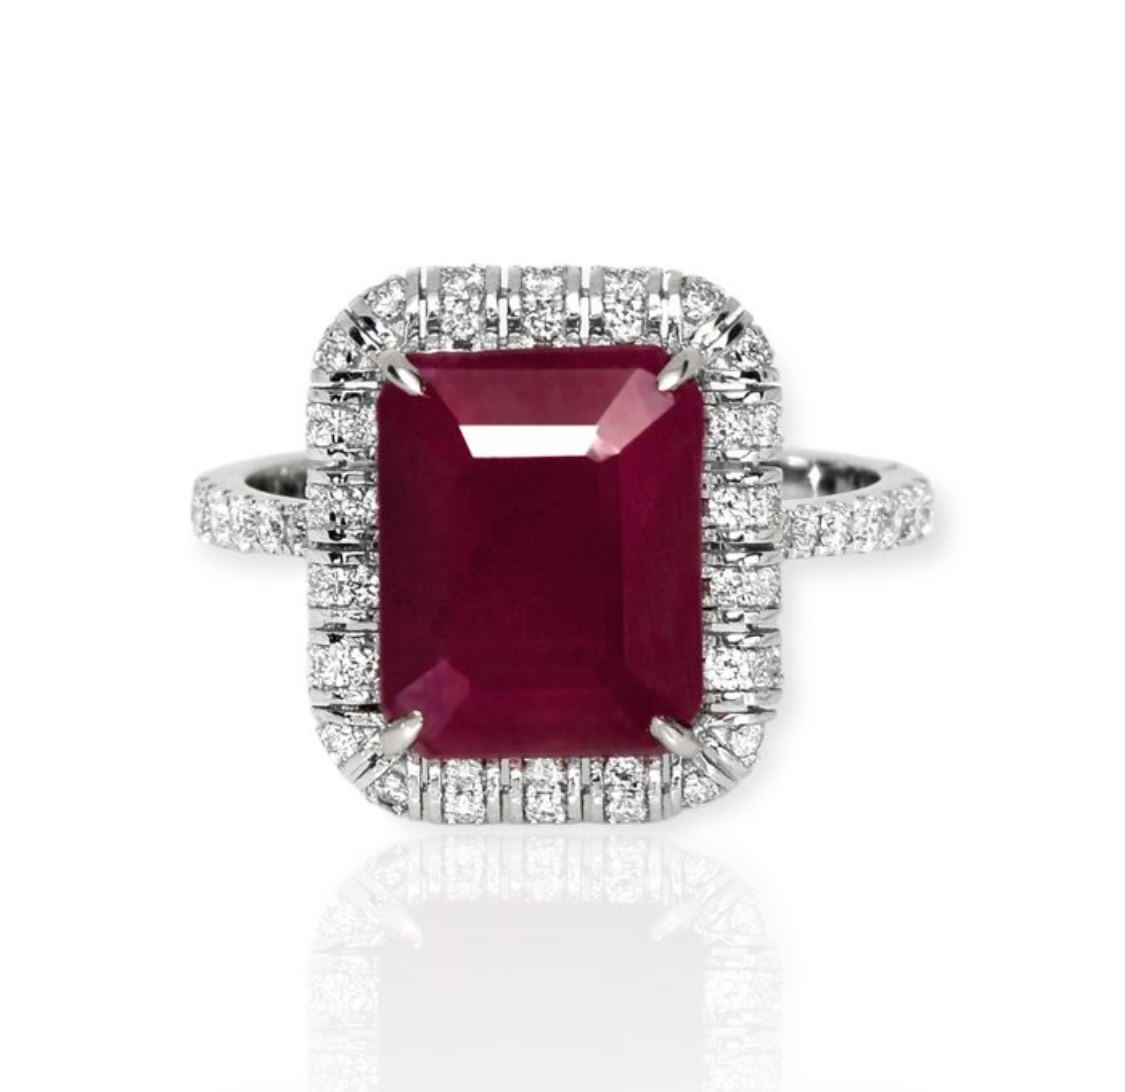 .. - Prsten s přírodním rubínem 4,88 ct a diamanty 0,46 ct, zlato 585/1000, značeno platnou puncovní značkou "labuť", hrubá hmotnost 4,05 g